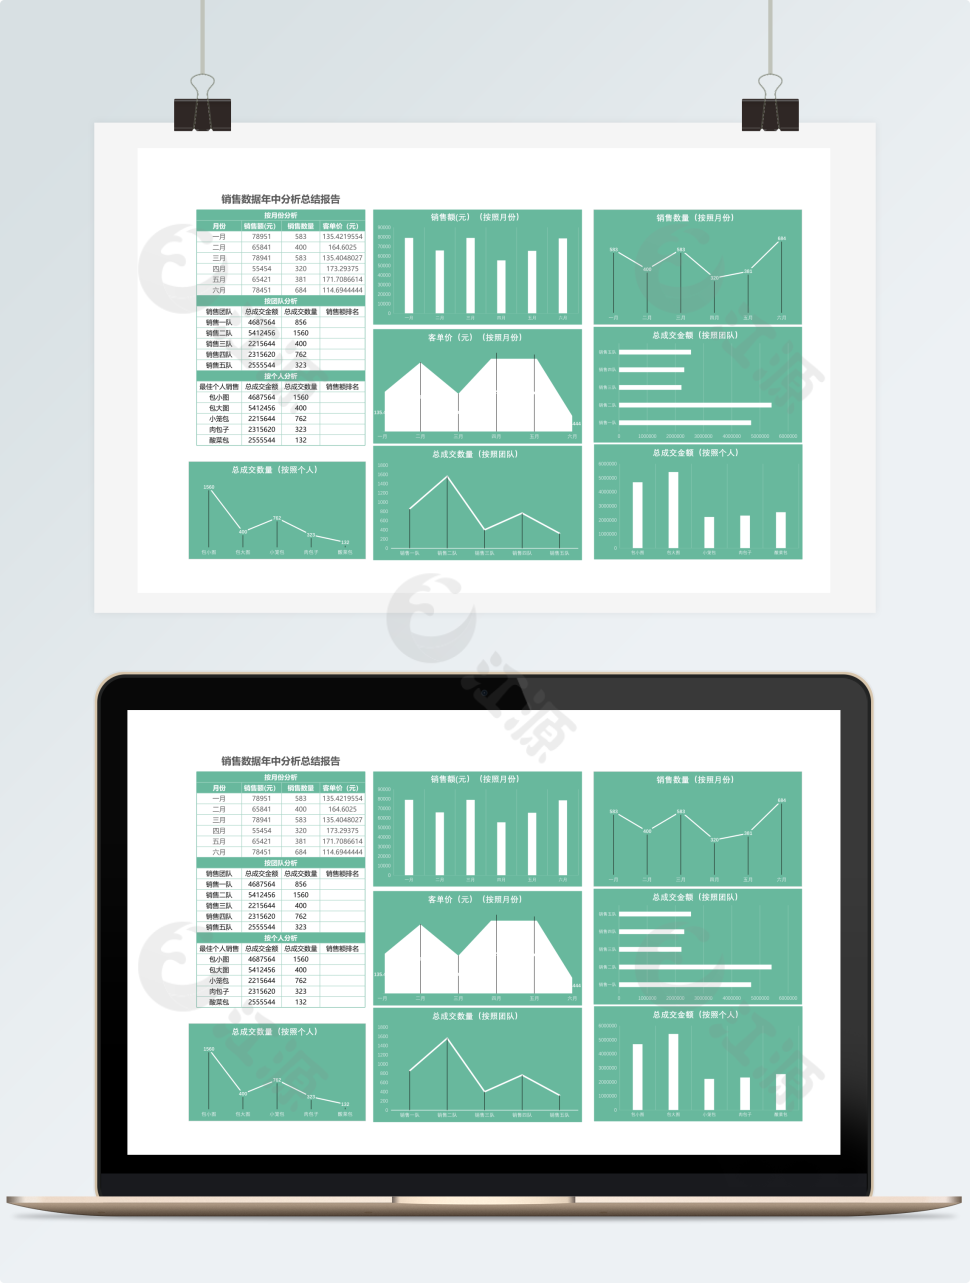 销售数据年中分析总结报表Excel模板